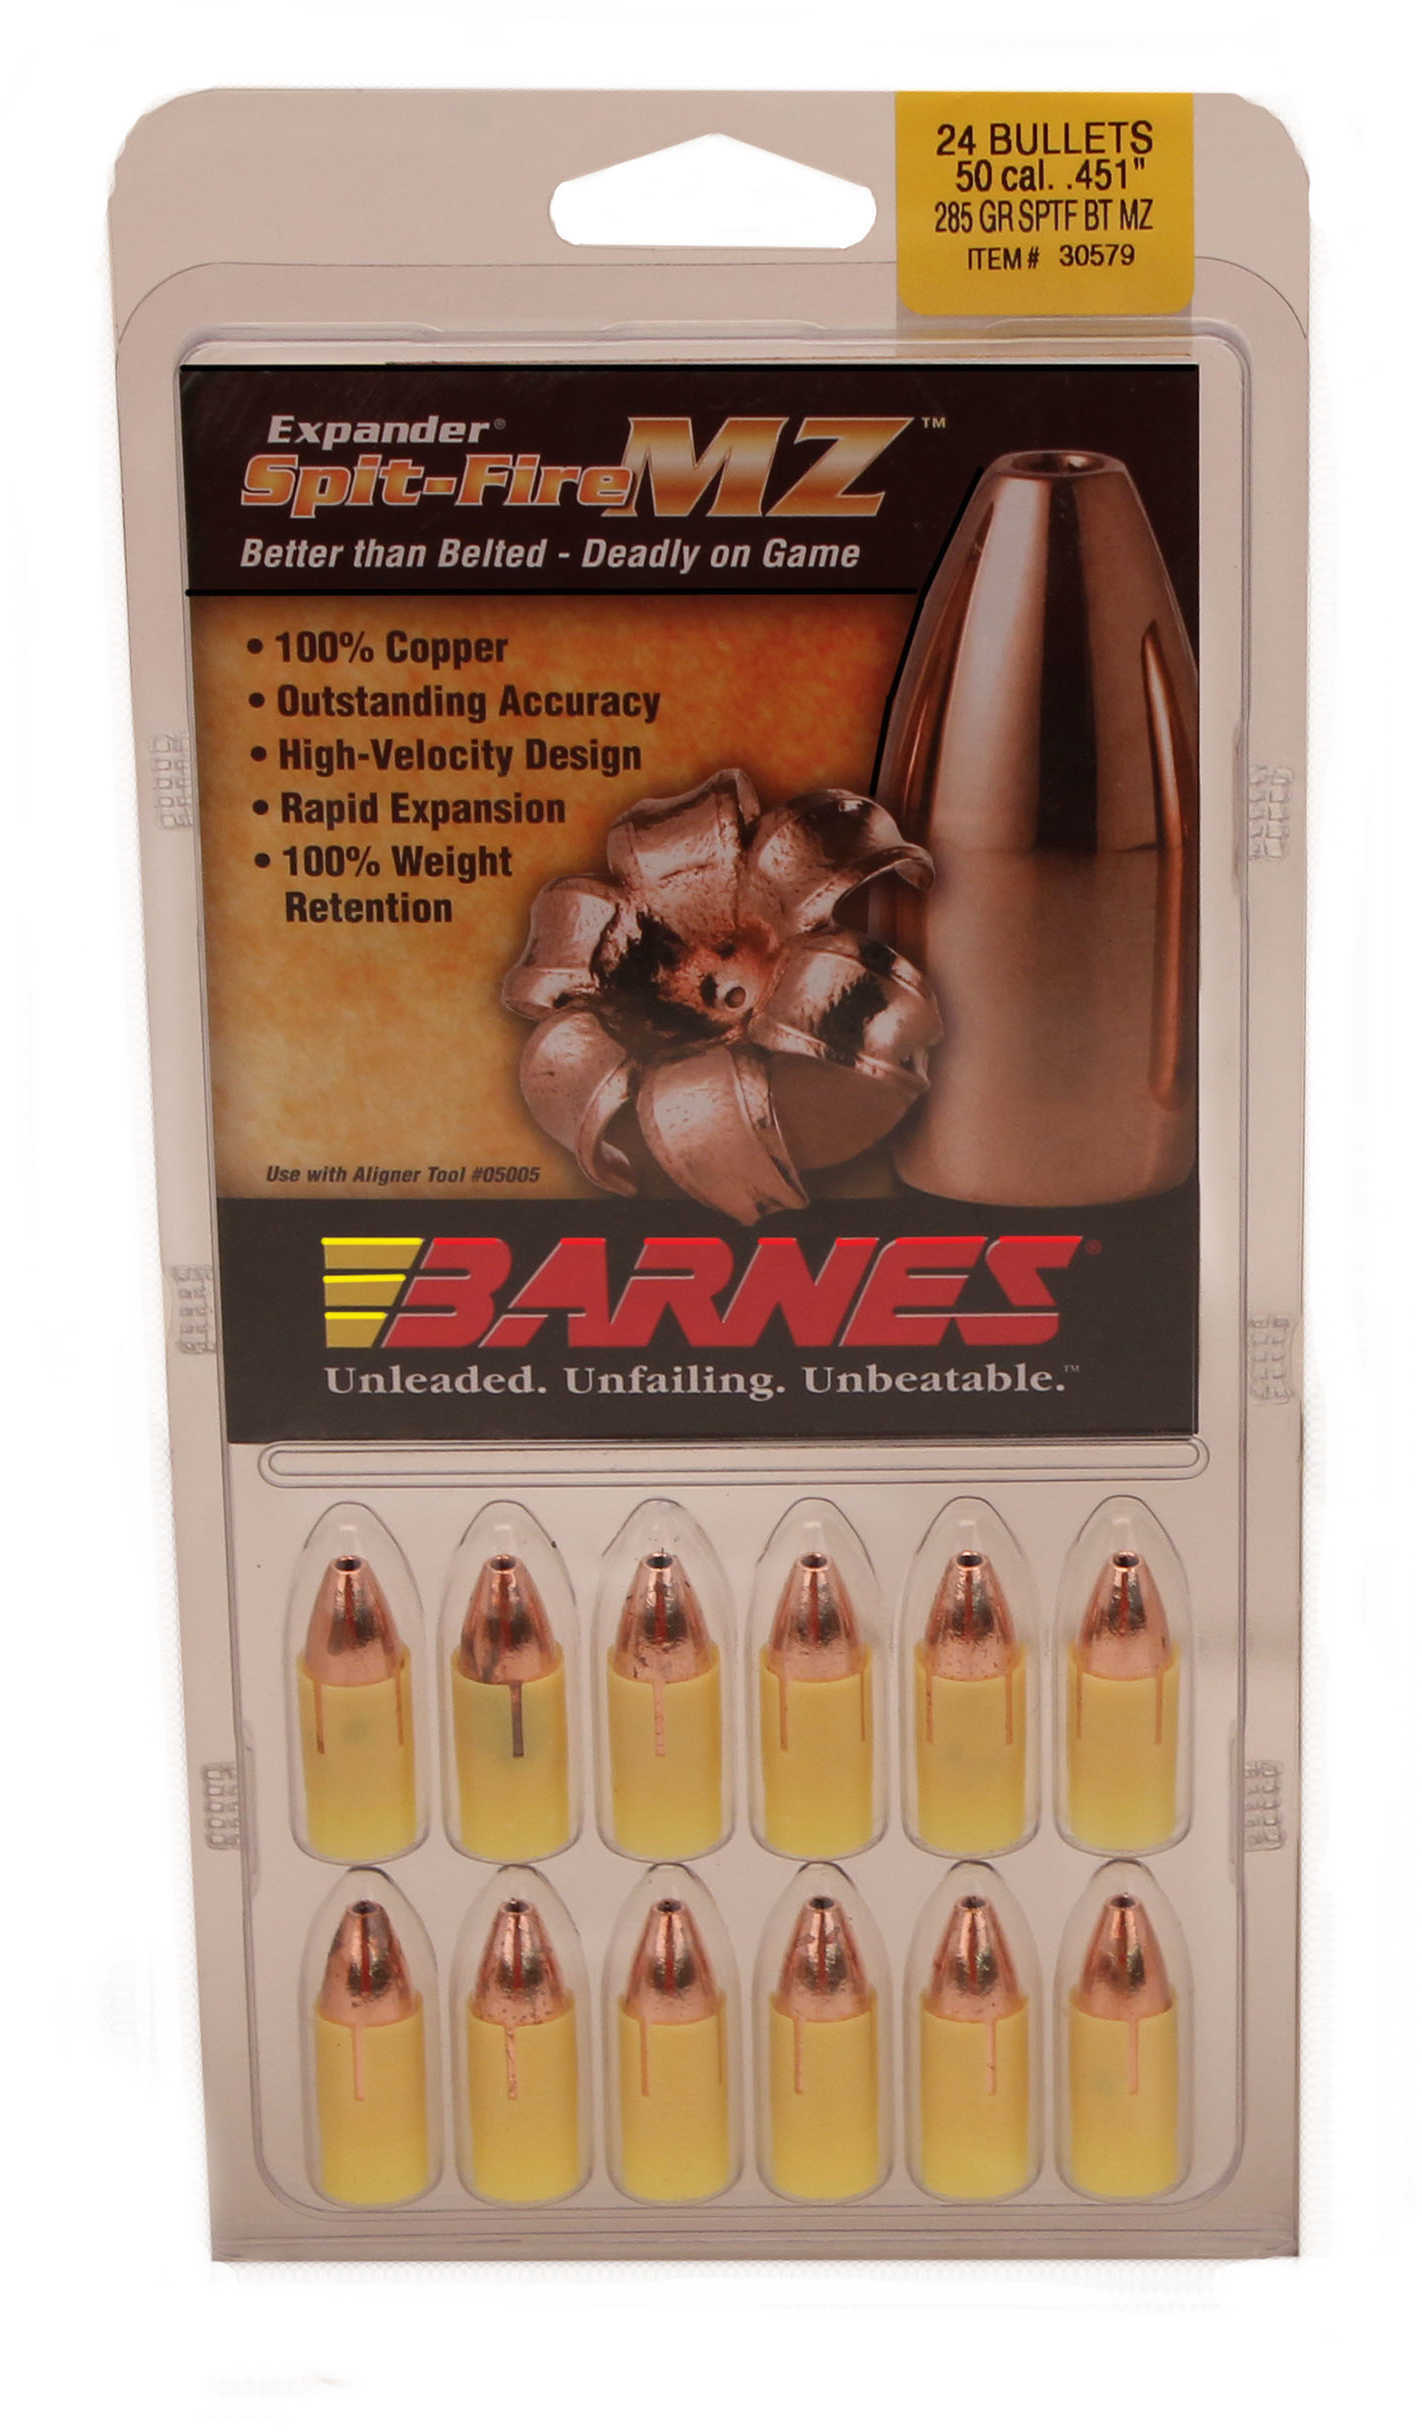 Barnes 50 Caliber Black Powder Spitfire Spitzer Boat Tail 285 Grain Bullet 24/Pack Md: 45154